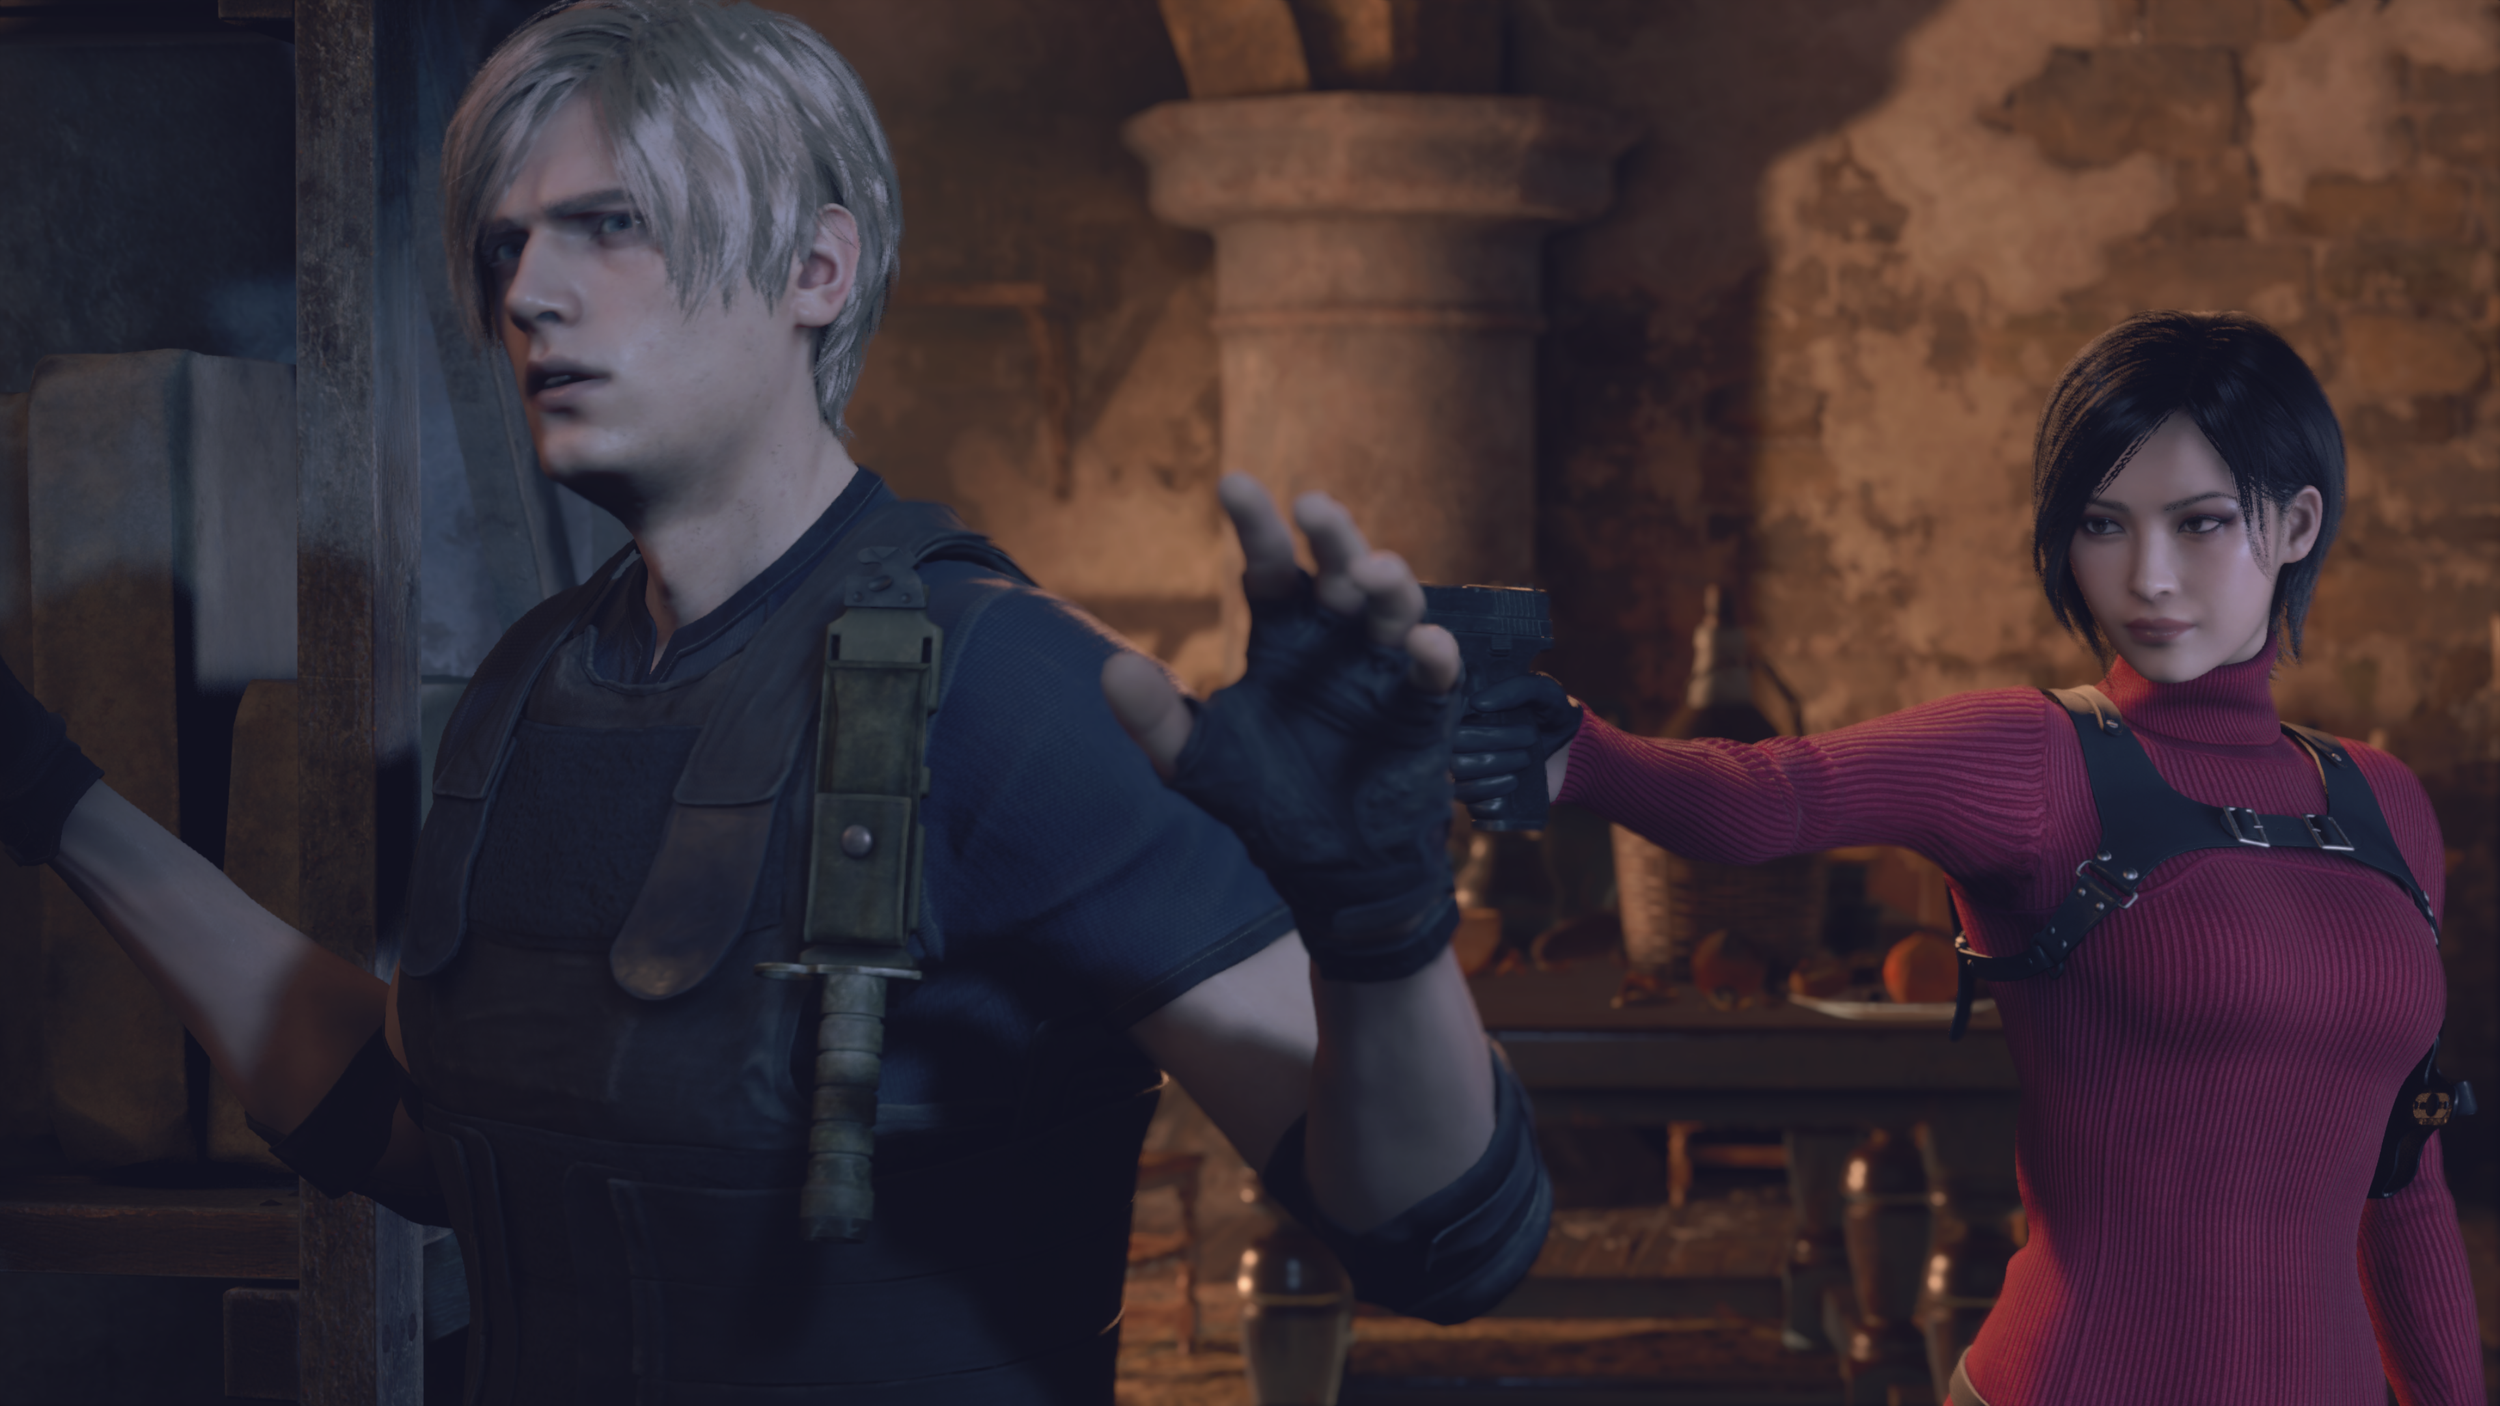 The Resident Evil 4 Remake Totally Failed Ashley Graham